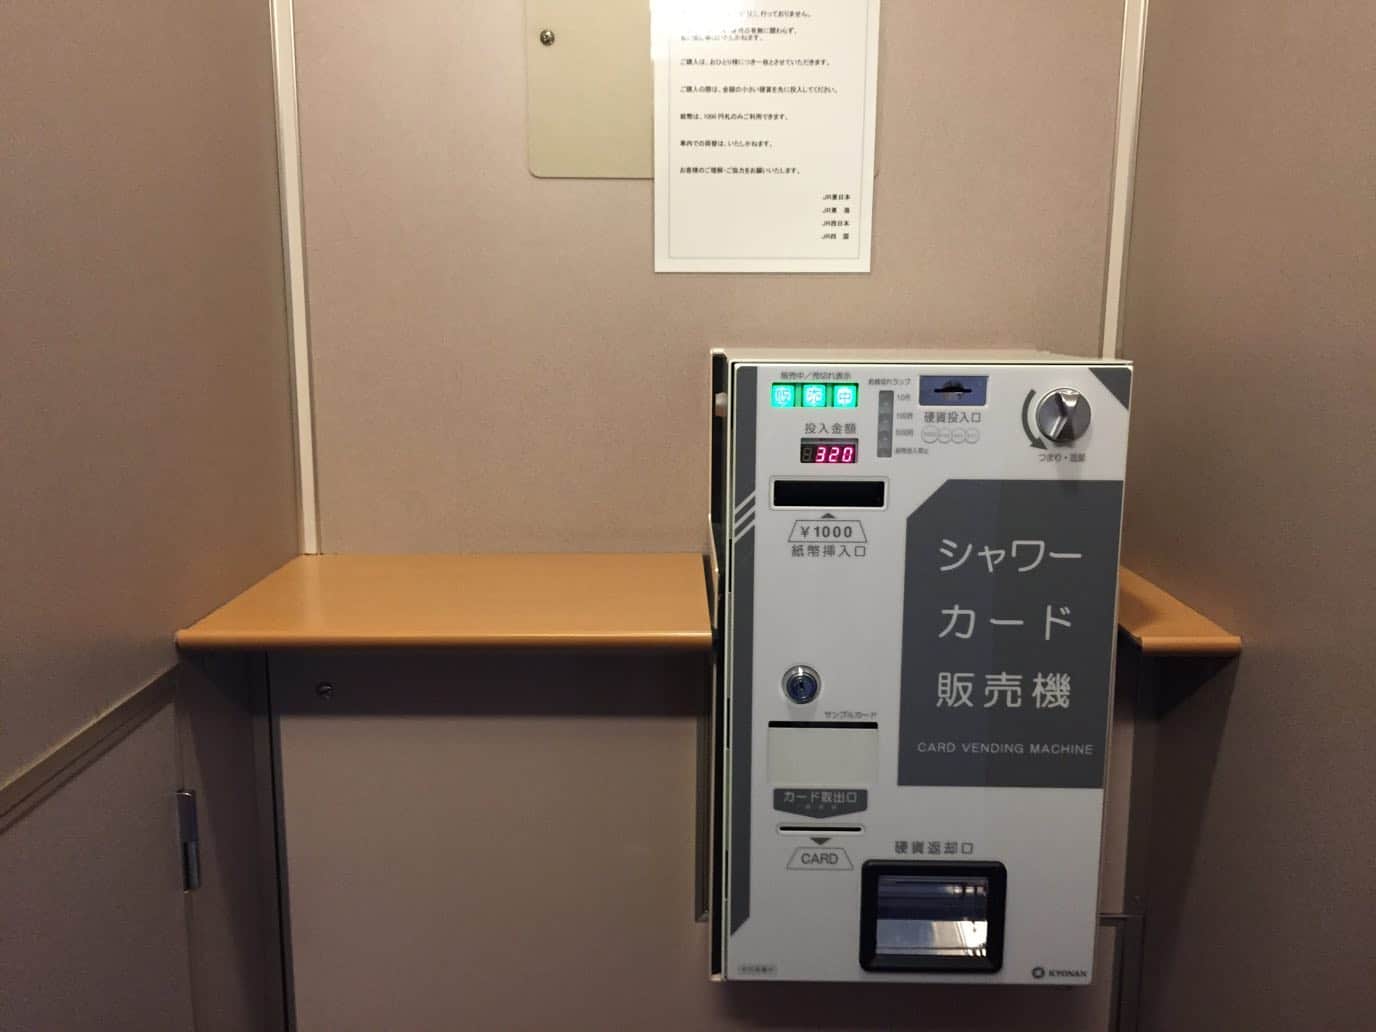 ตู้ซื้อบัตรอาบน้ำของ Overnight Sleeper Train รถไฟนอนที่ญี่ปุ่น